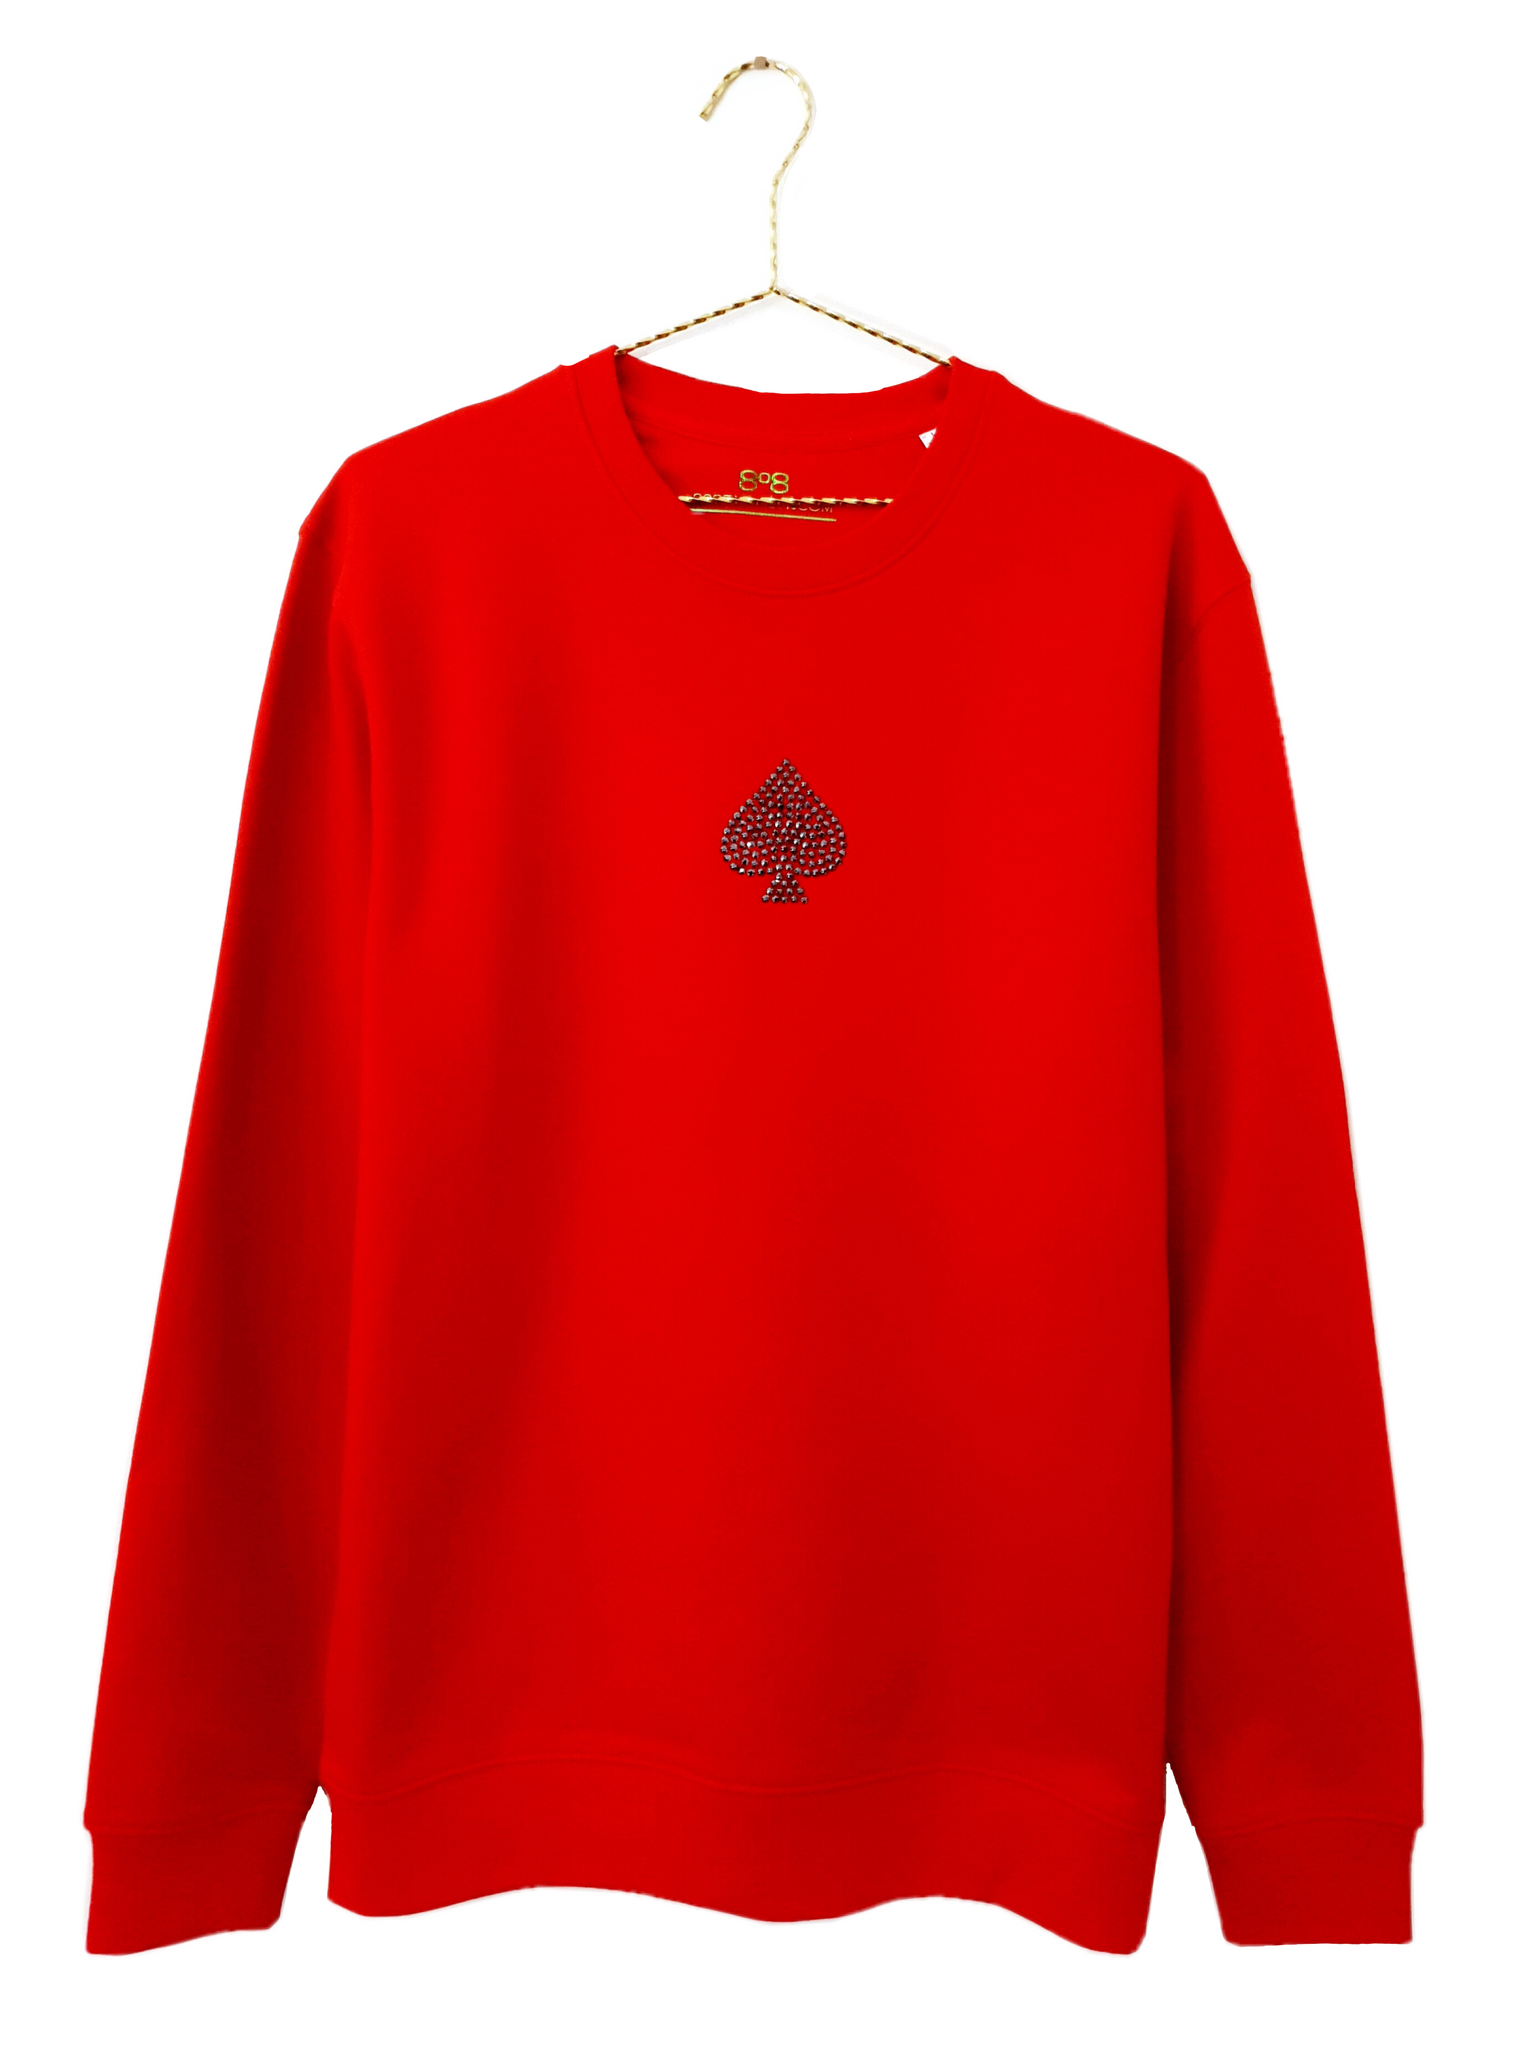 Ace Embellished Sweatshirt - Red (Unisex)